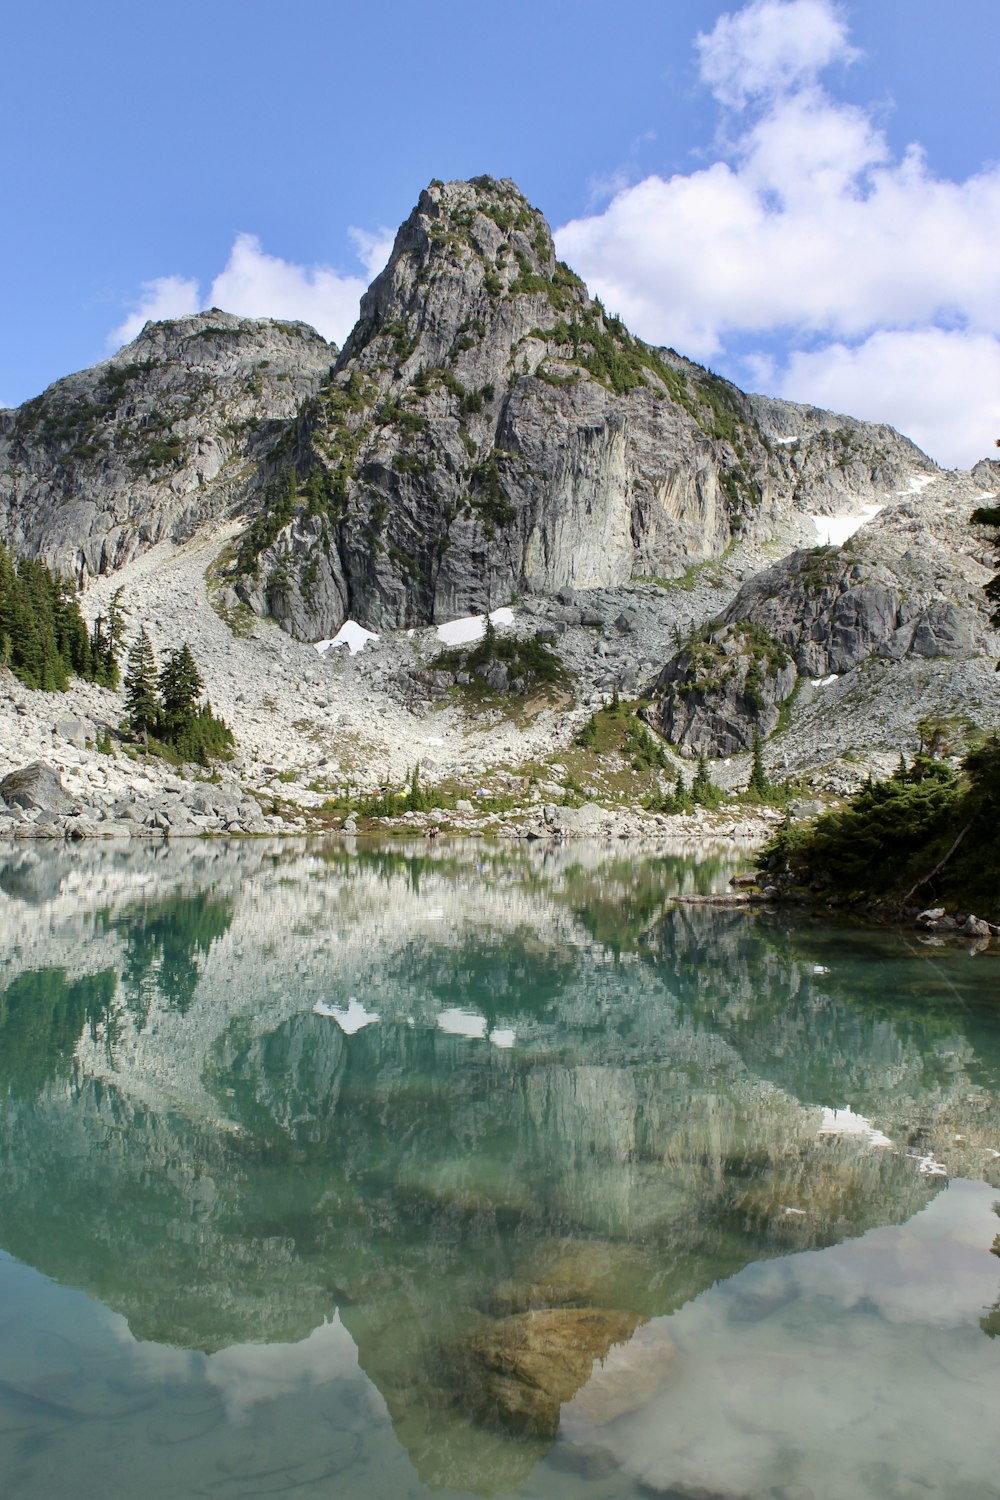 green lake near gray mountain during daytime